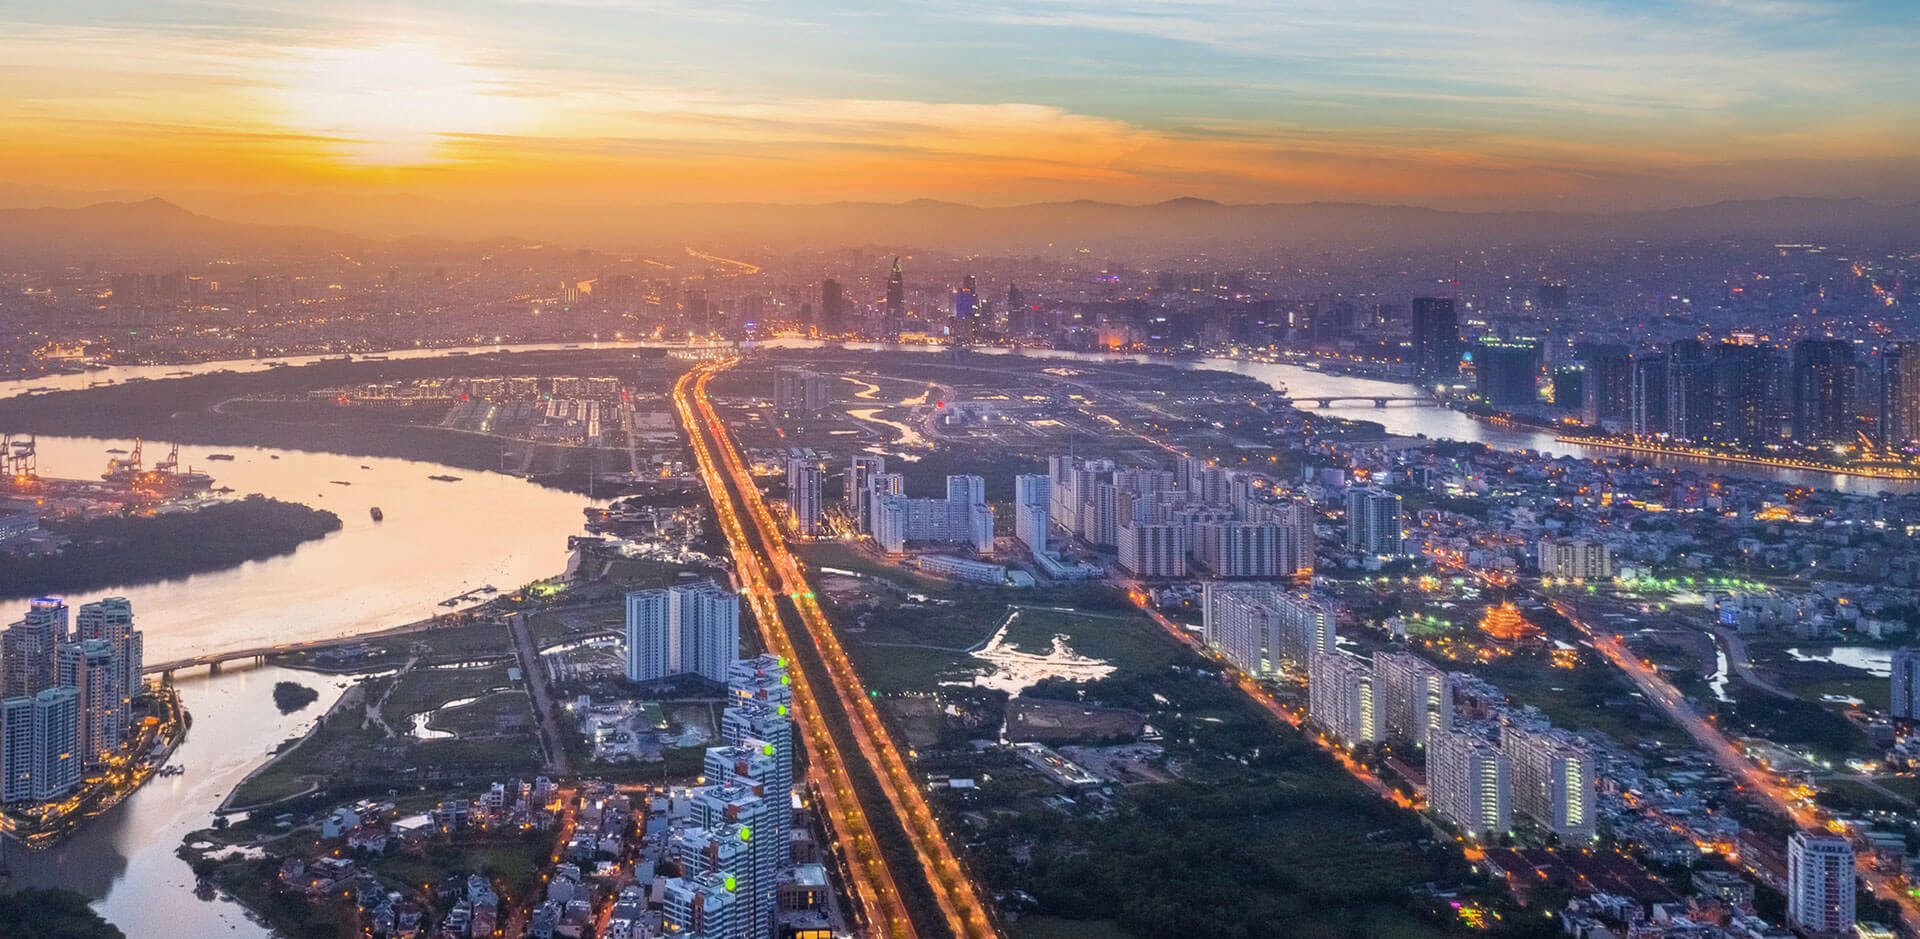 Khu Đông Sài Gòn tâm điểm thị trường bất động sản Hồ Chí Minh năm 2019